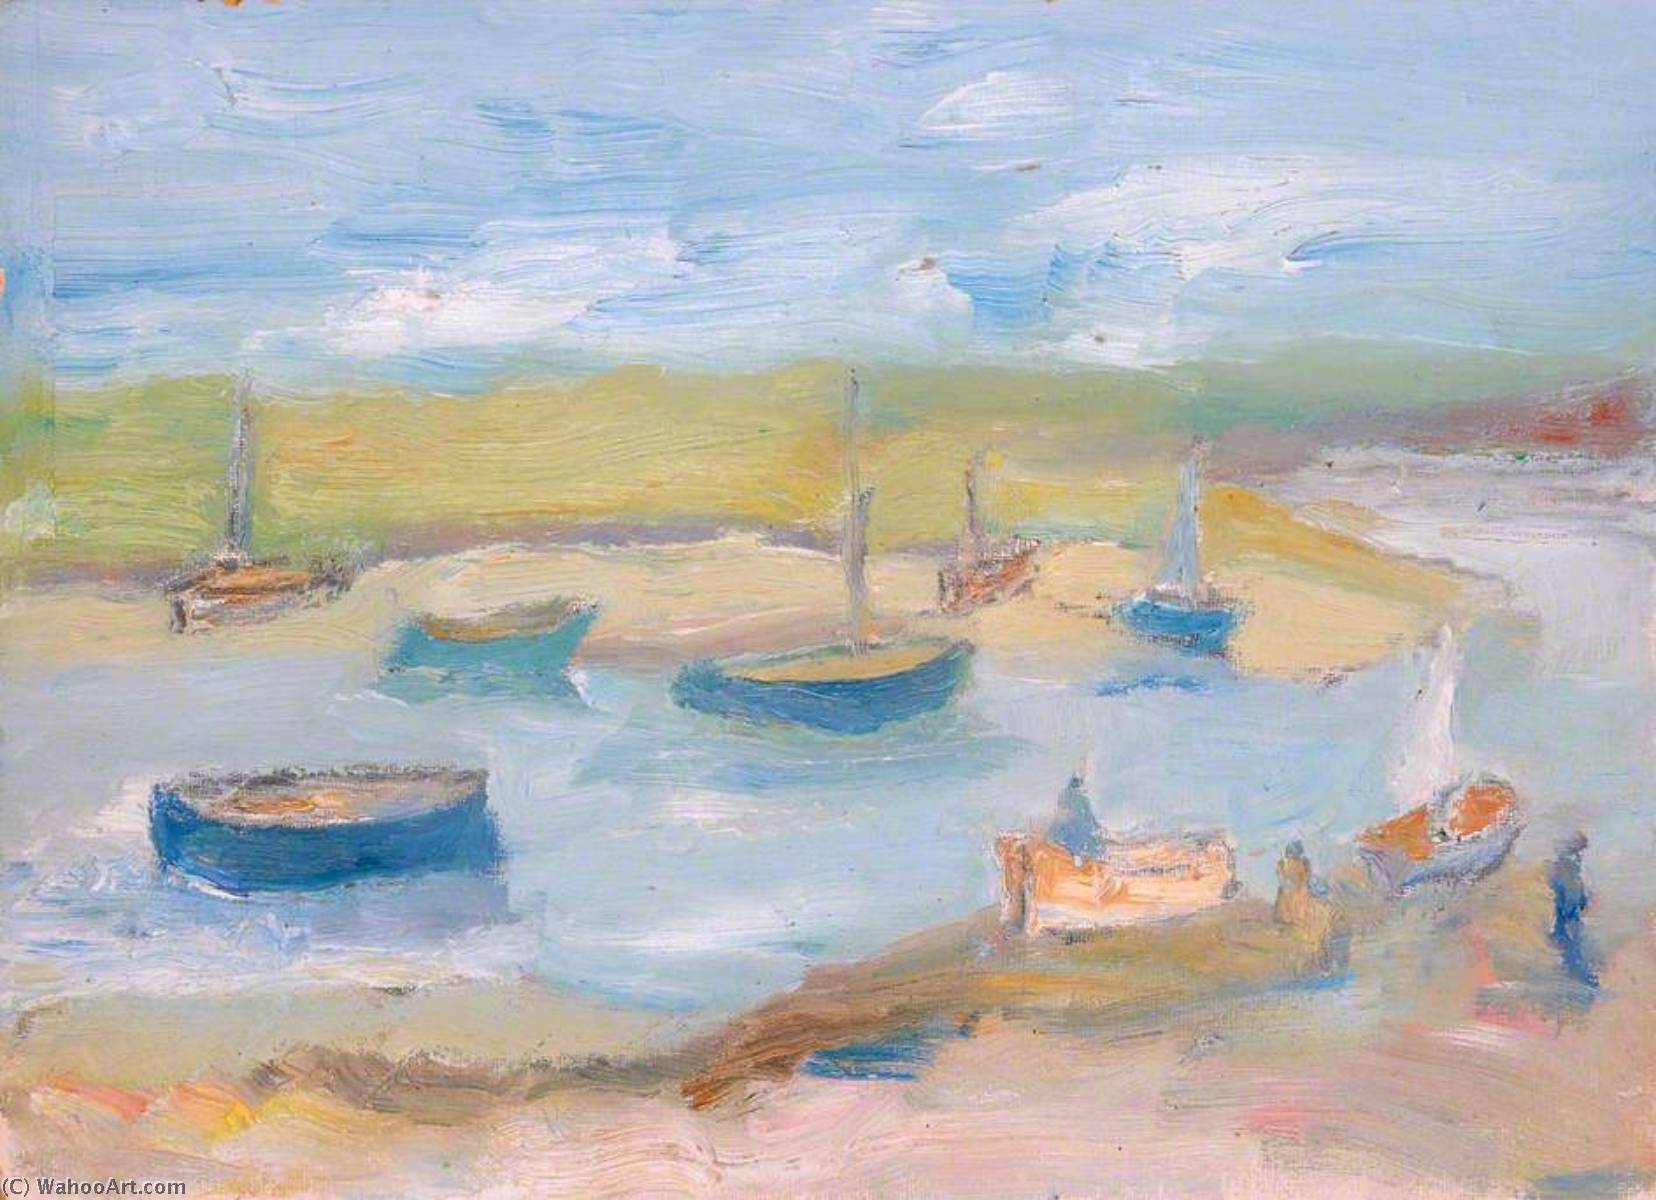 Wikoo.org - موسوعة الفنون الجميلة - اللوحة، العمل الفني Margaret Sidney Davies - Boats on the Estuary